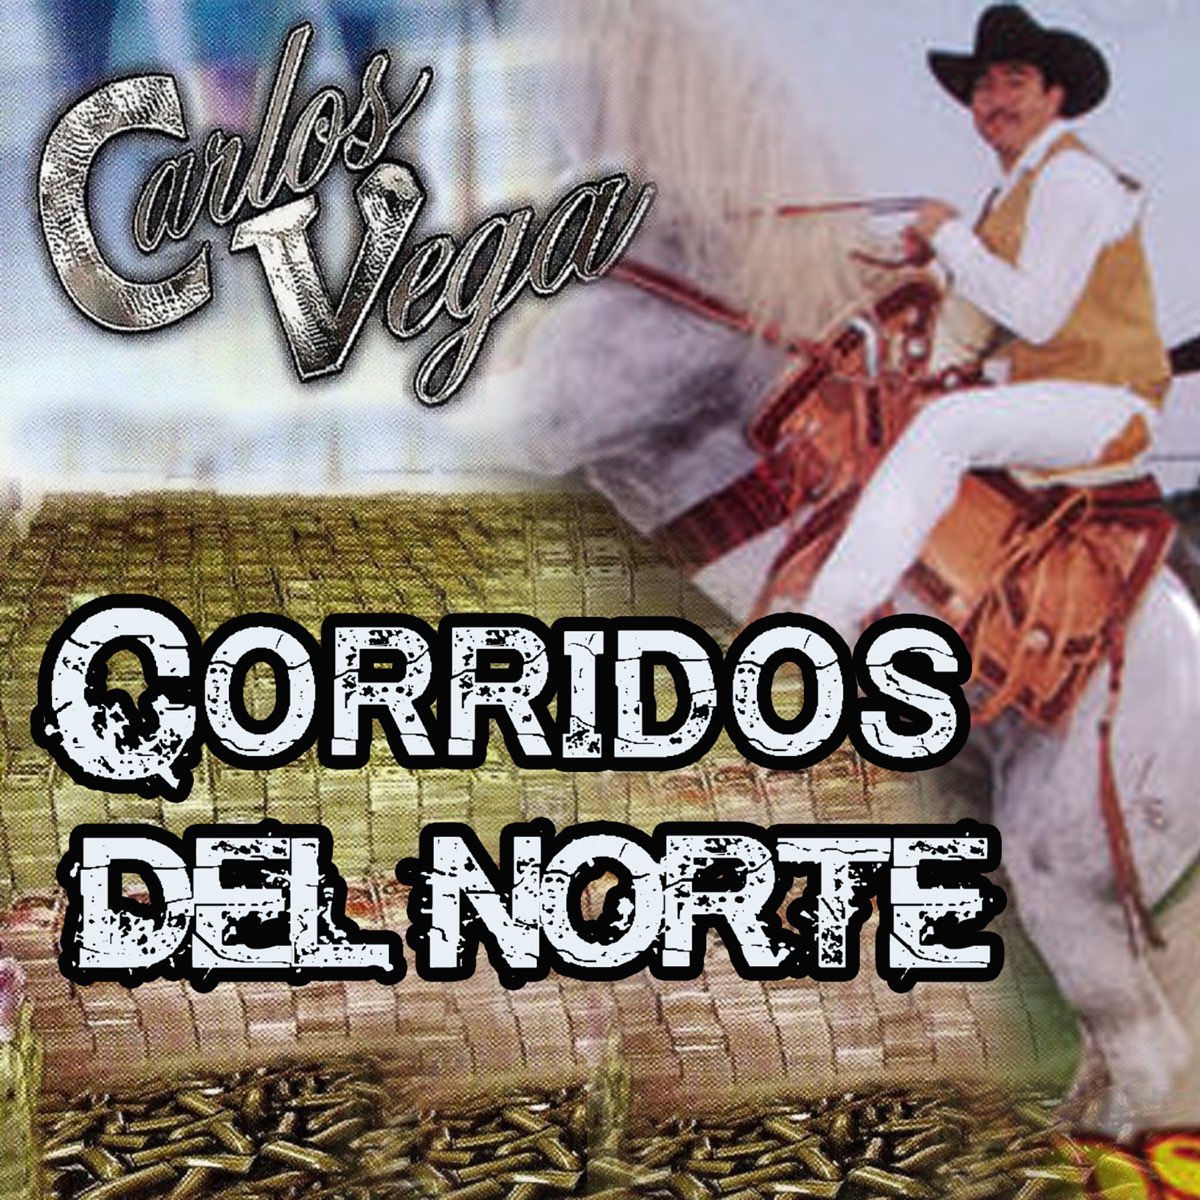 Corridos del Norte by Carlos Vega on Apple Music